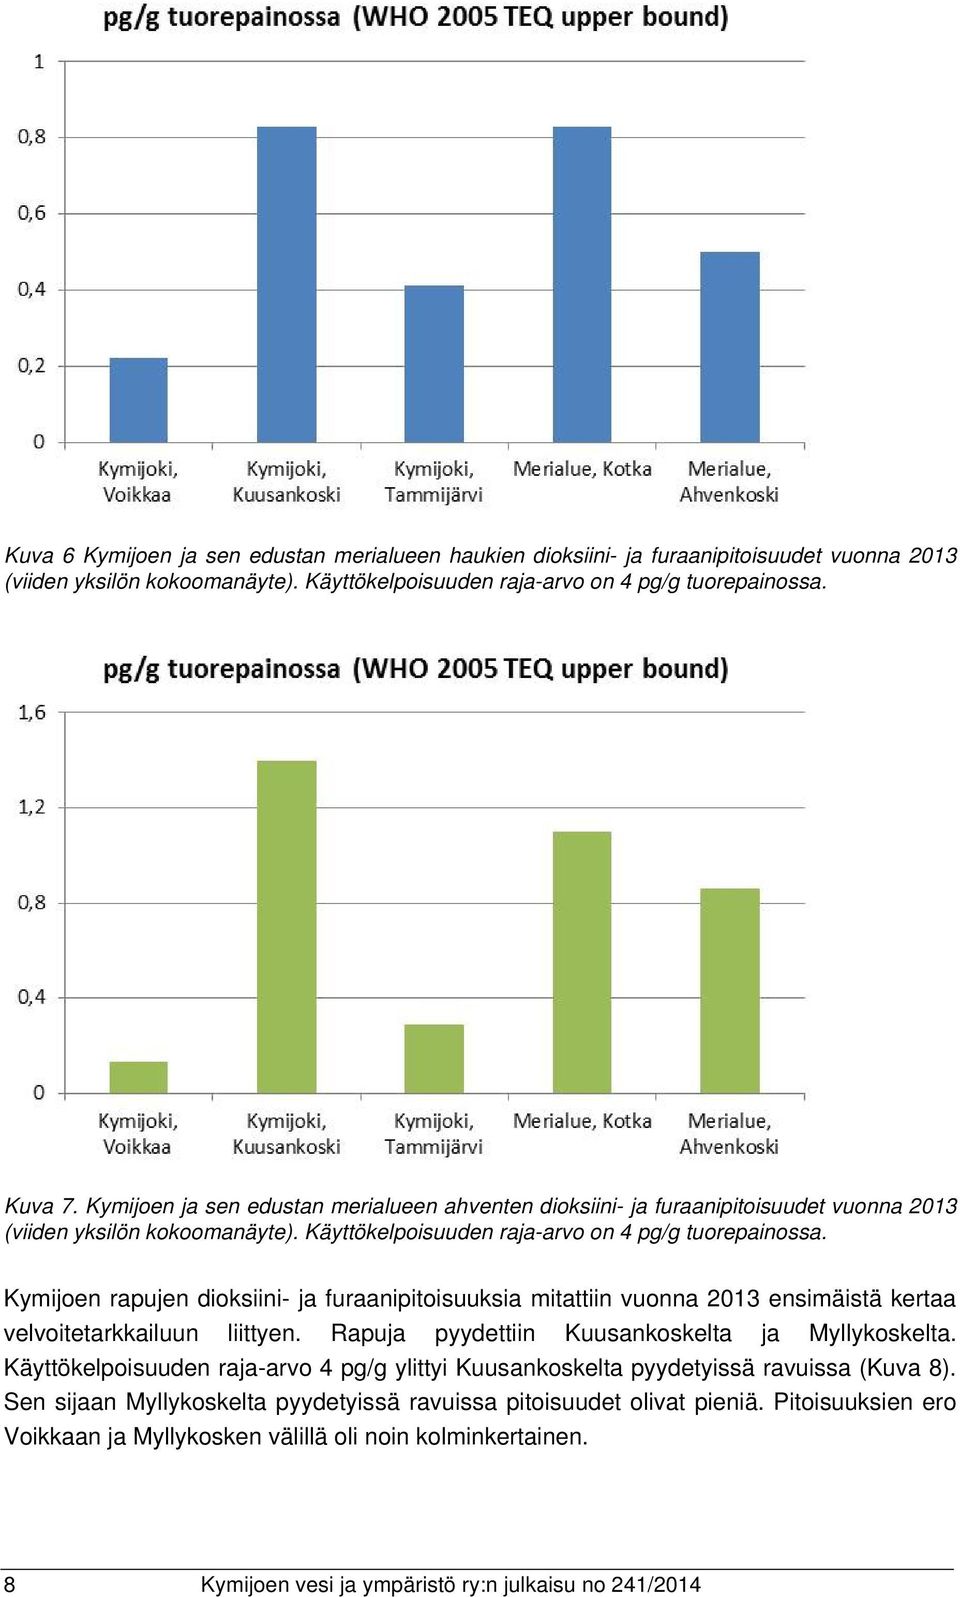 Kymijoen rapujen dioksiini- ja furaanipitoisuuksia mitattiin vuonna 2013 ensimäistä kertaa velvoitetarkkailuun liittyen. Rapuja pyydettiin Kuusankoskelta ja Myllykoskelta.